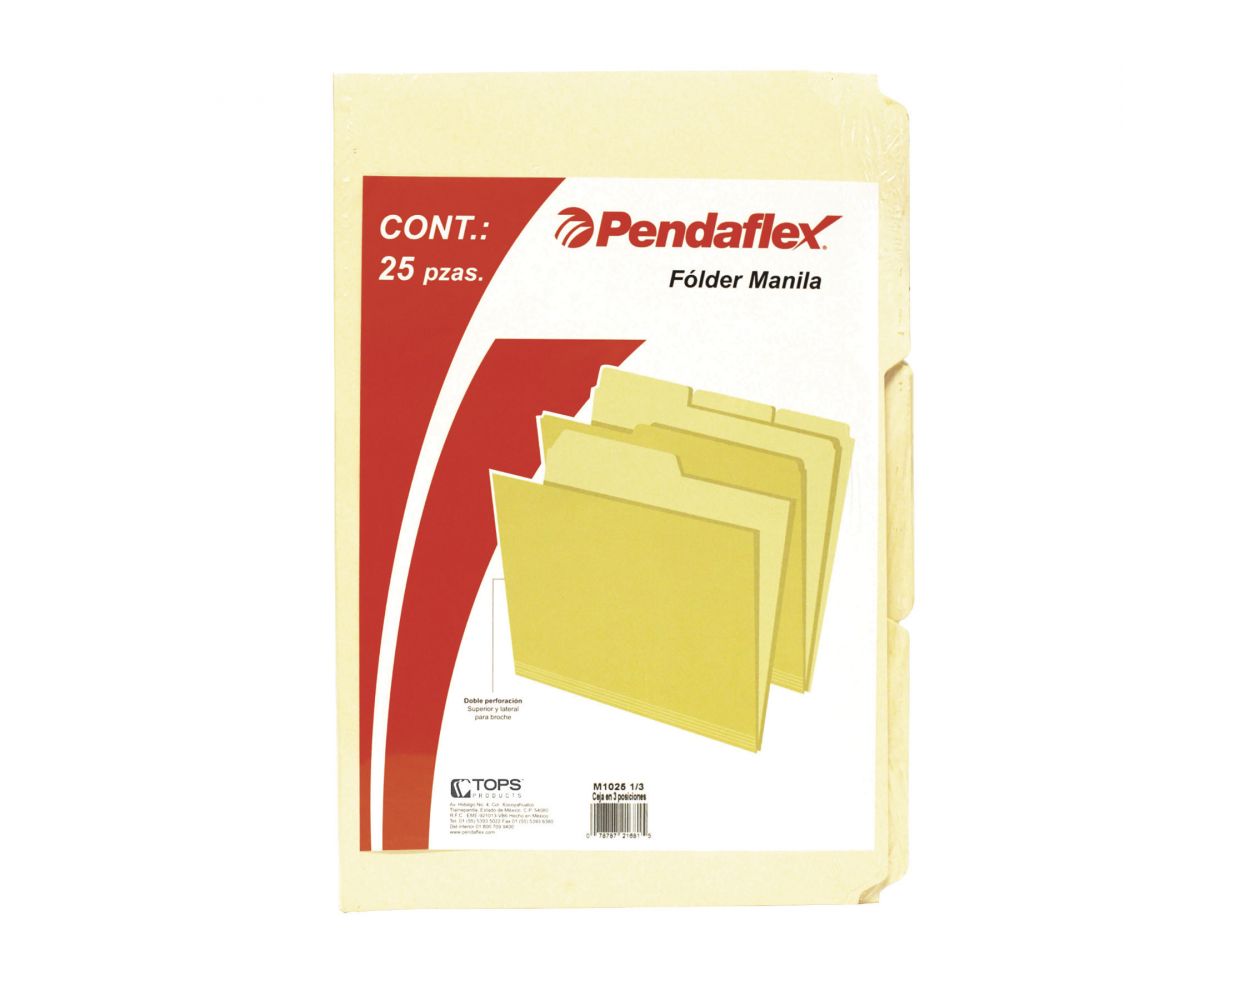 Folder manila Pendaflex oficio color cre Papel manila stock de 9.5 pts., pre-suajado superior y lateral para broche de 8 cm, dobleces adicionales para expansión de hasta 2 cm, paquete con 25 piezas.                                                                                                   ma ceja 1/2 caja con 25 pzas             - M1025 1/2